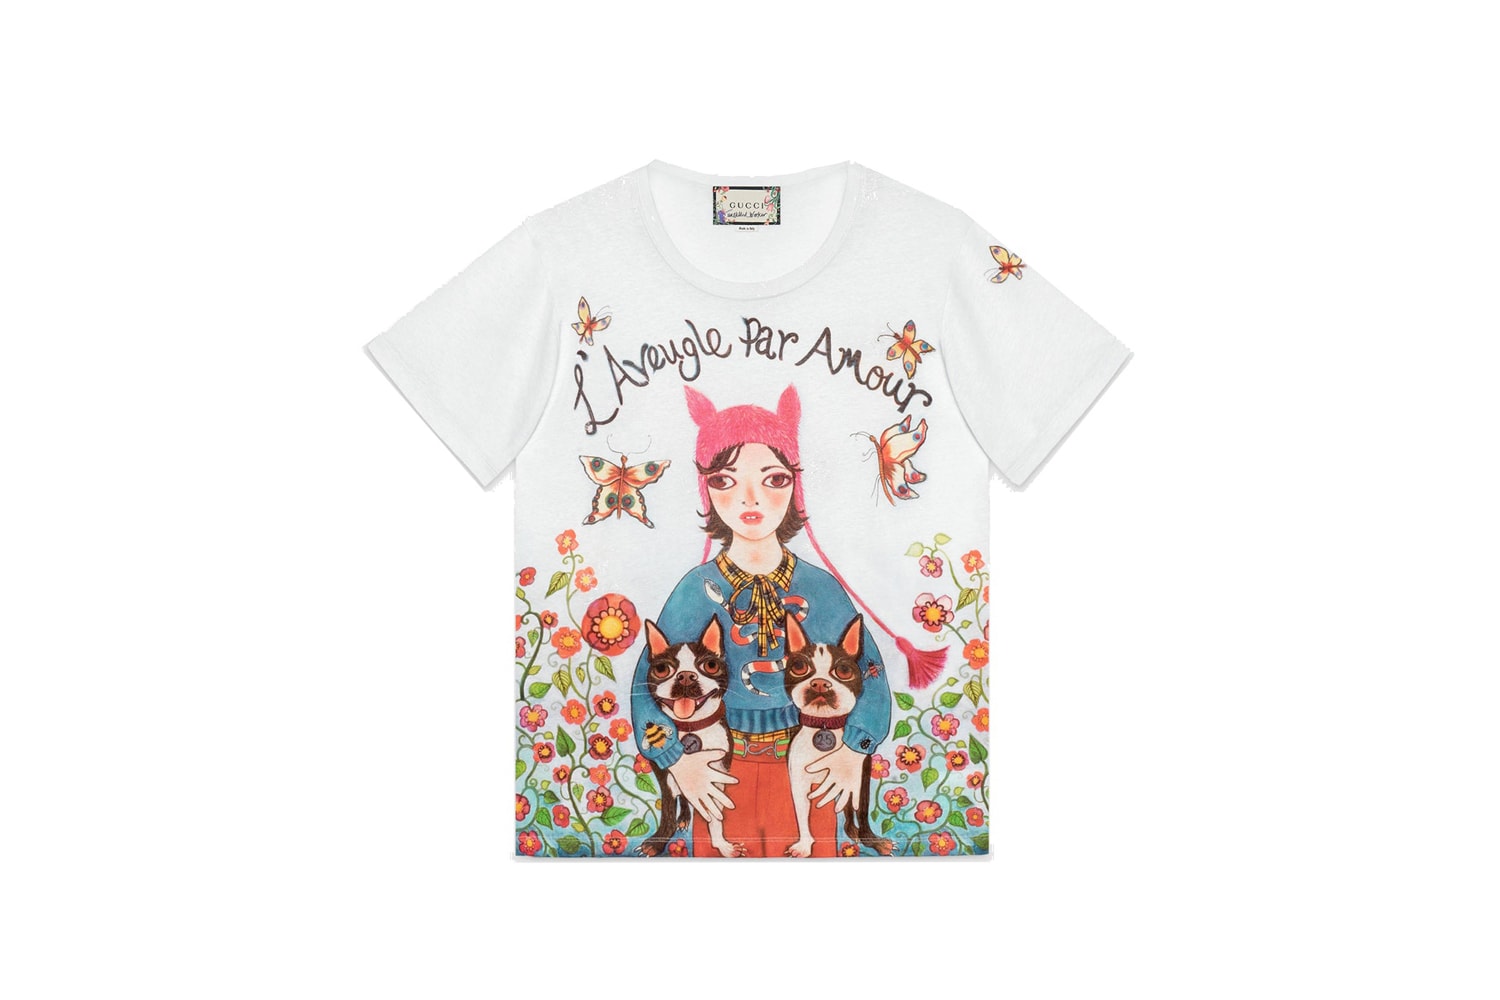 구찌 2018 봄, 여름 그래픽 티셔츠 컬렉션 , Gucci Spring Summer Graphic T-shirt Collection